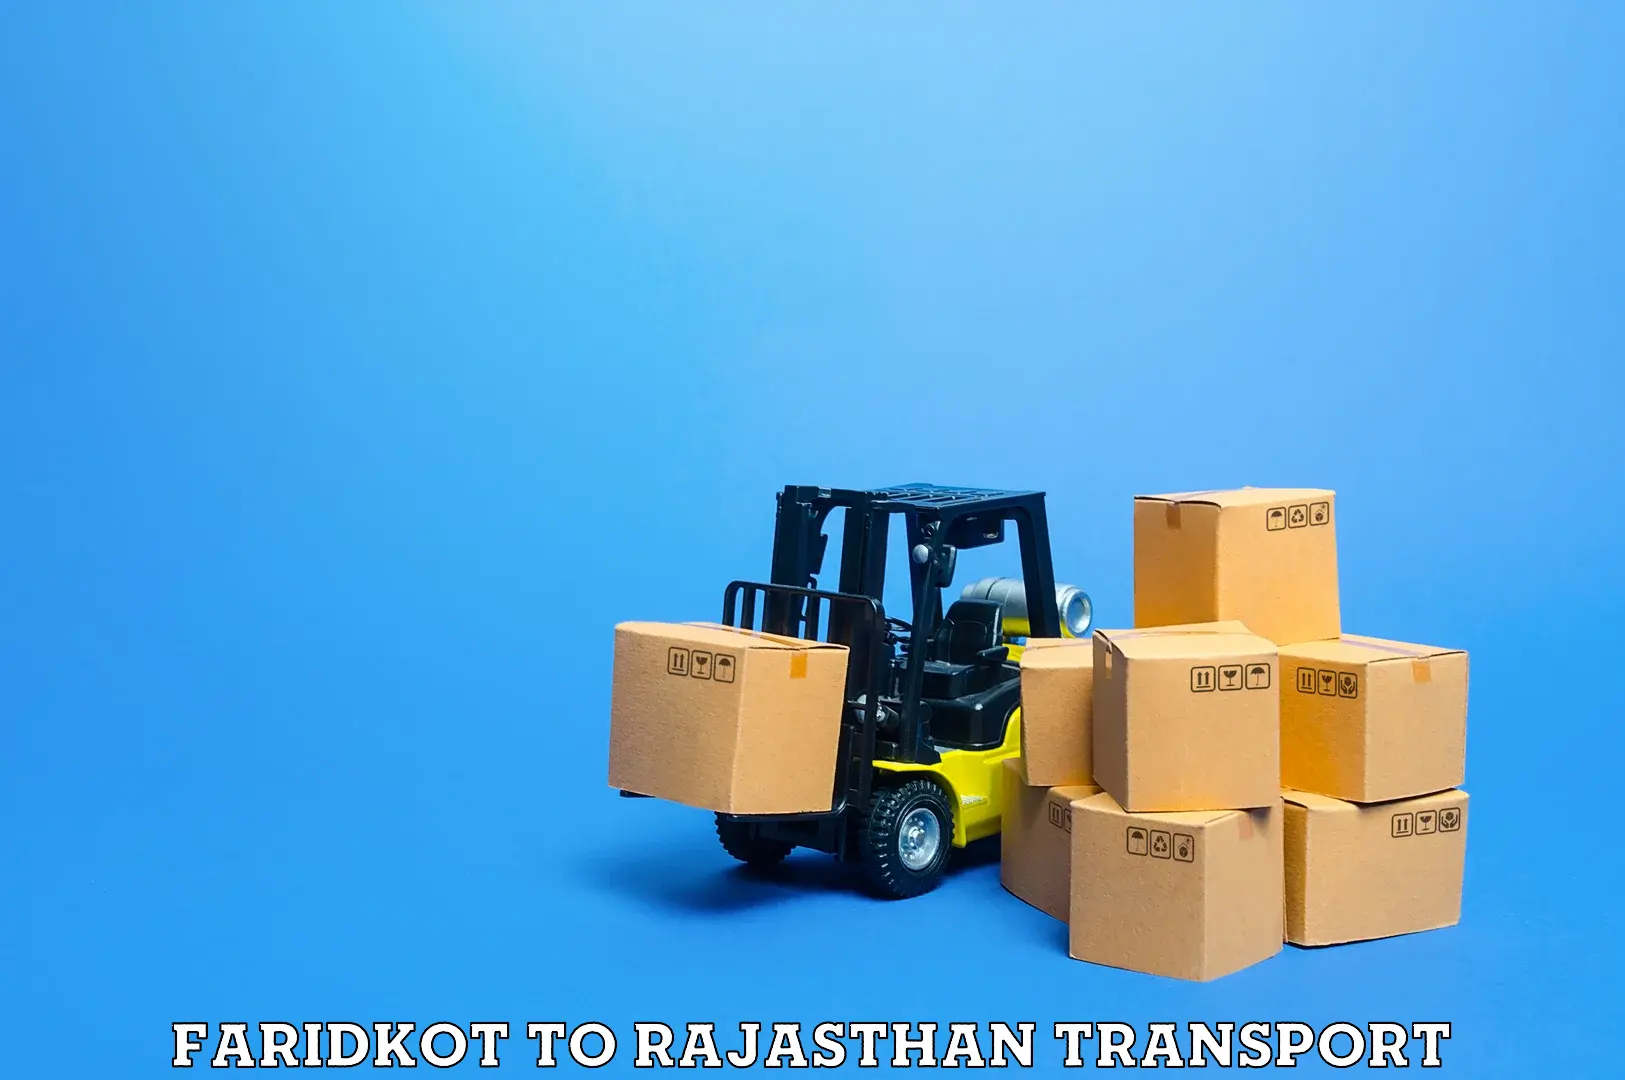 International cargo transportation services Faridkot to Jodhpur